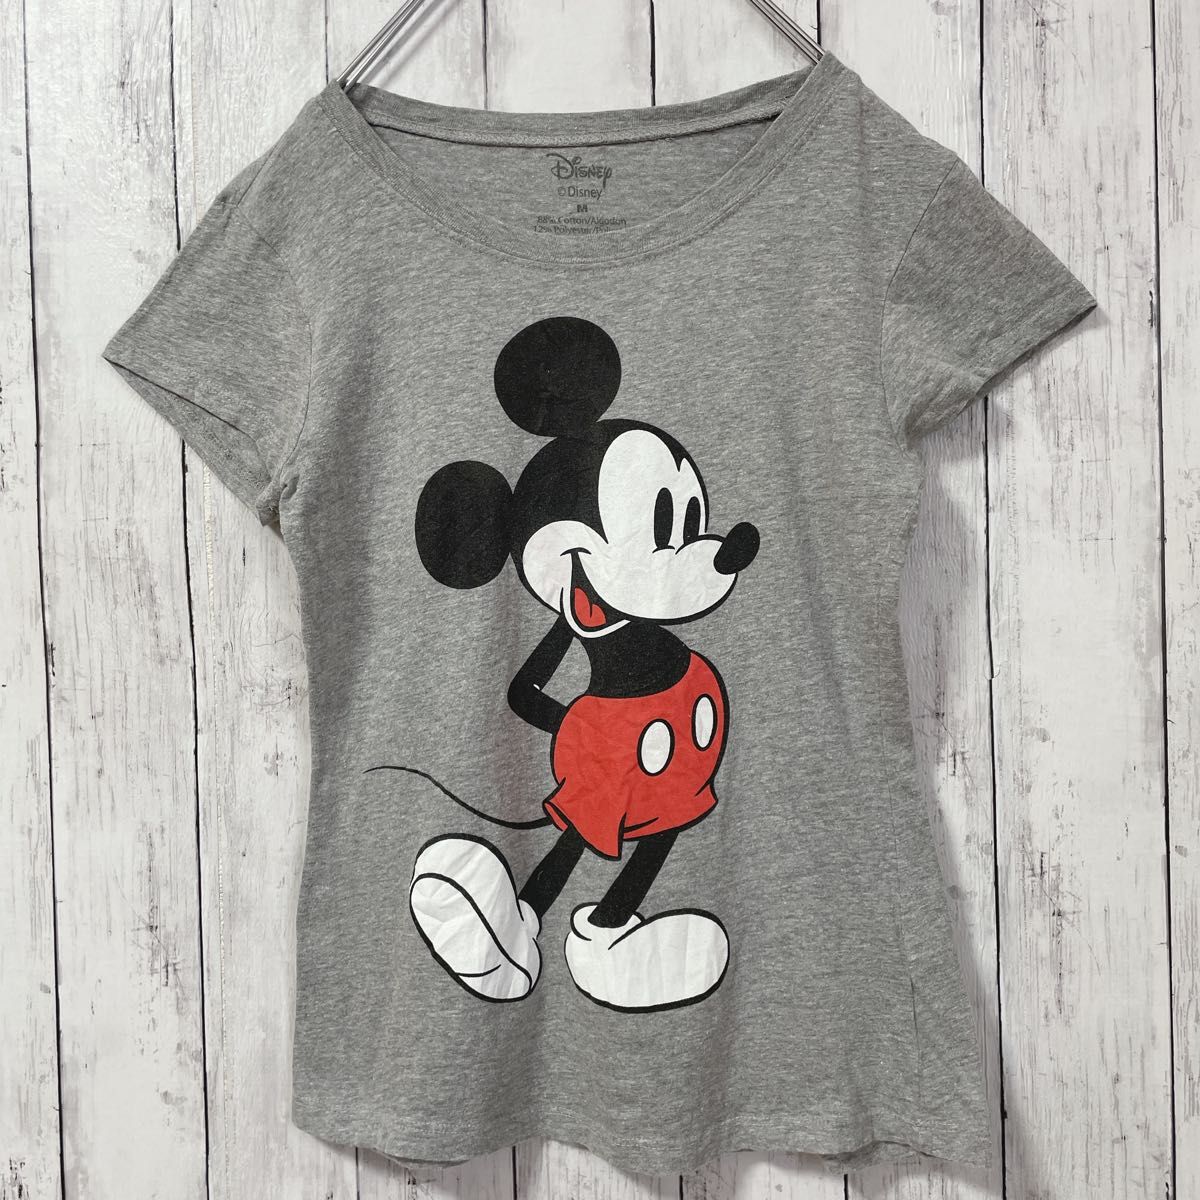 Disney ディズニー オールドミッキー レディース  半袖Tシャツ ミッキーマウス 灰色 グレー 海外古着